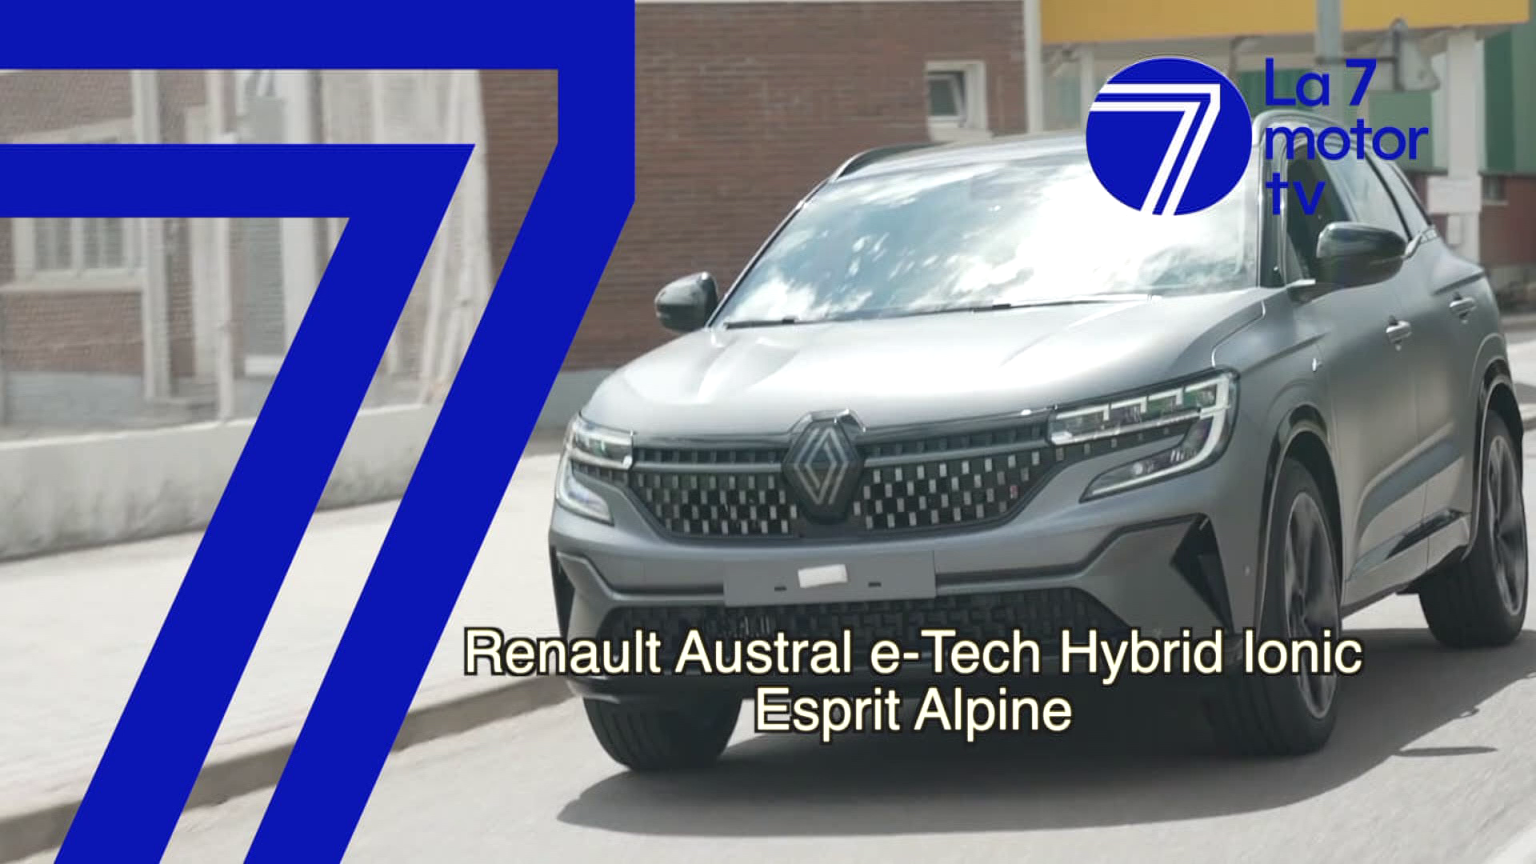 Renault Austral e-Tech Hybrid Ionic Esprit Alpine: confortable, tecnológico y bien equipado